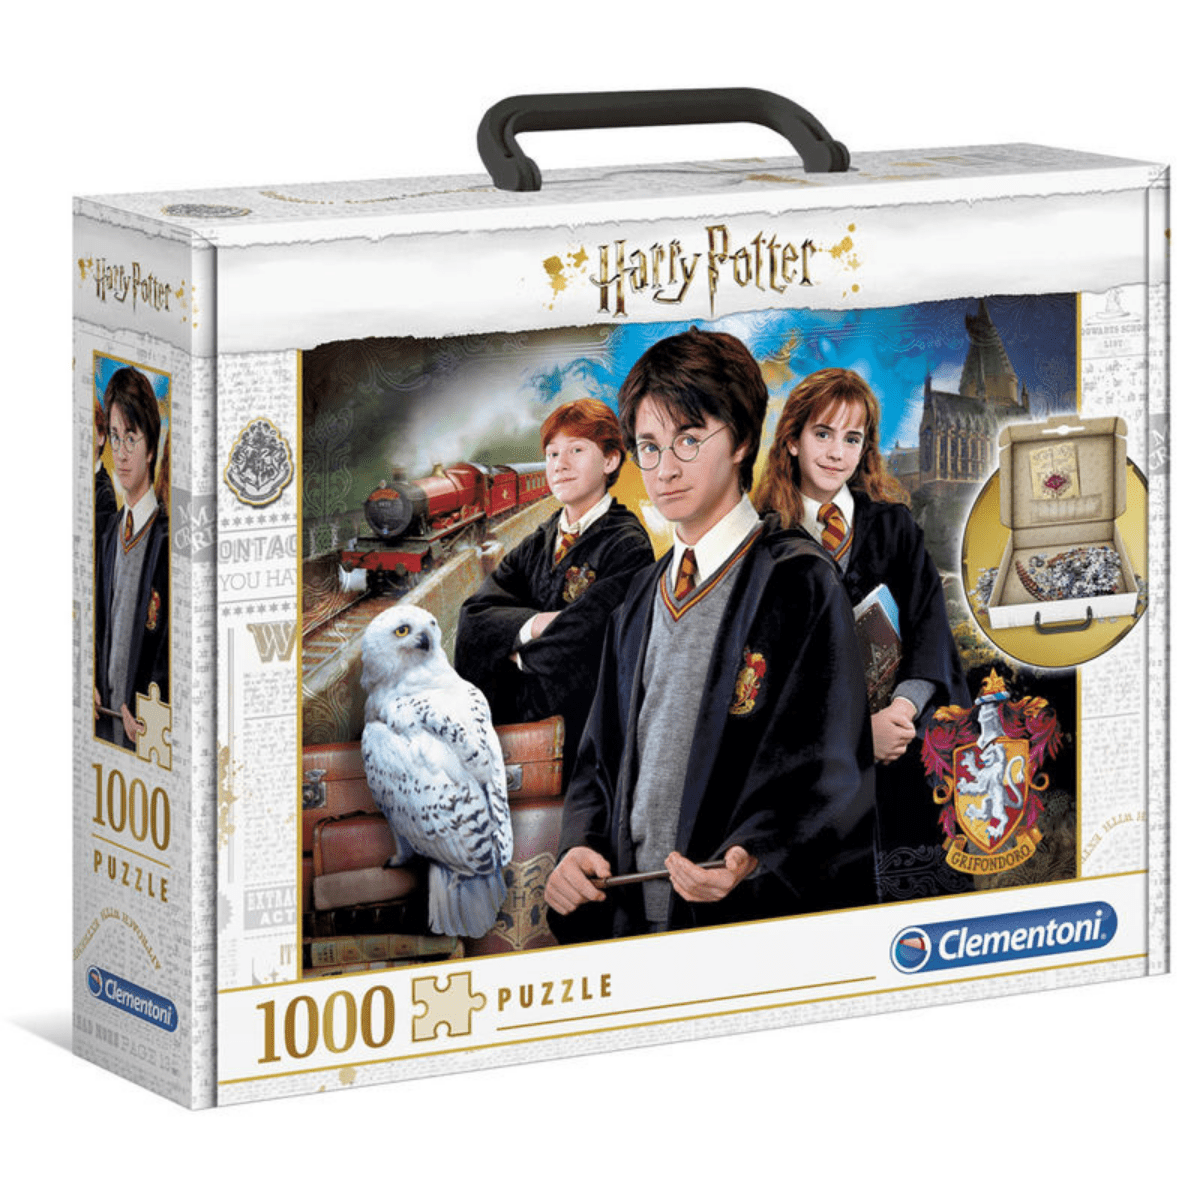 Harry Potter puslespill koffert, 1000 brikker